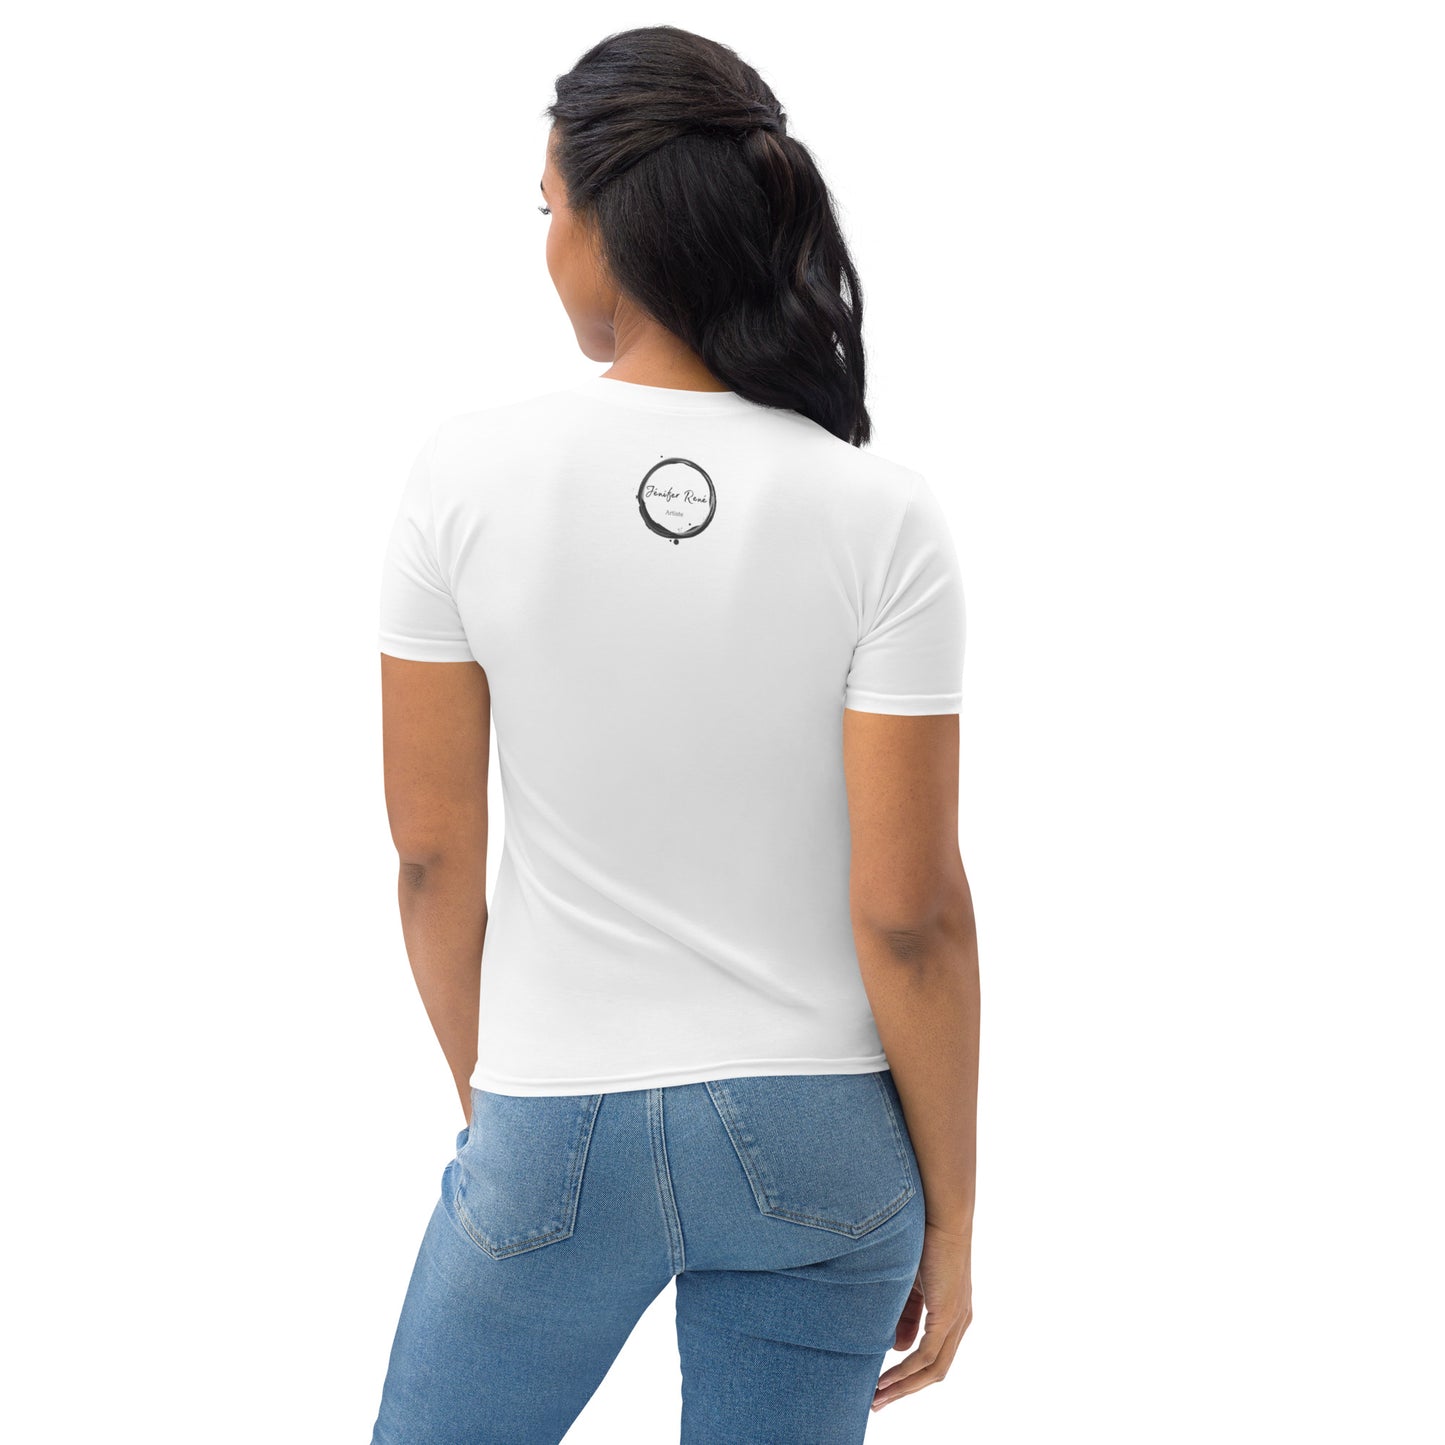 T-shirt blanc pour femme - Blue Jay